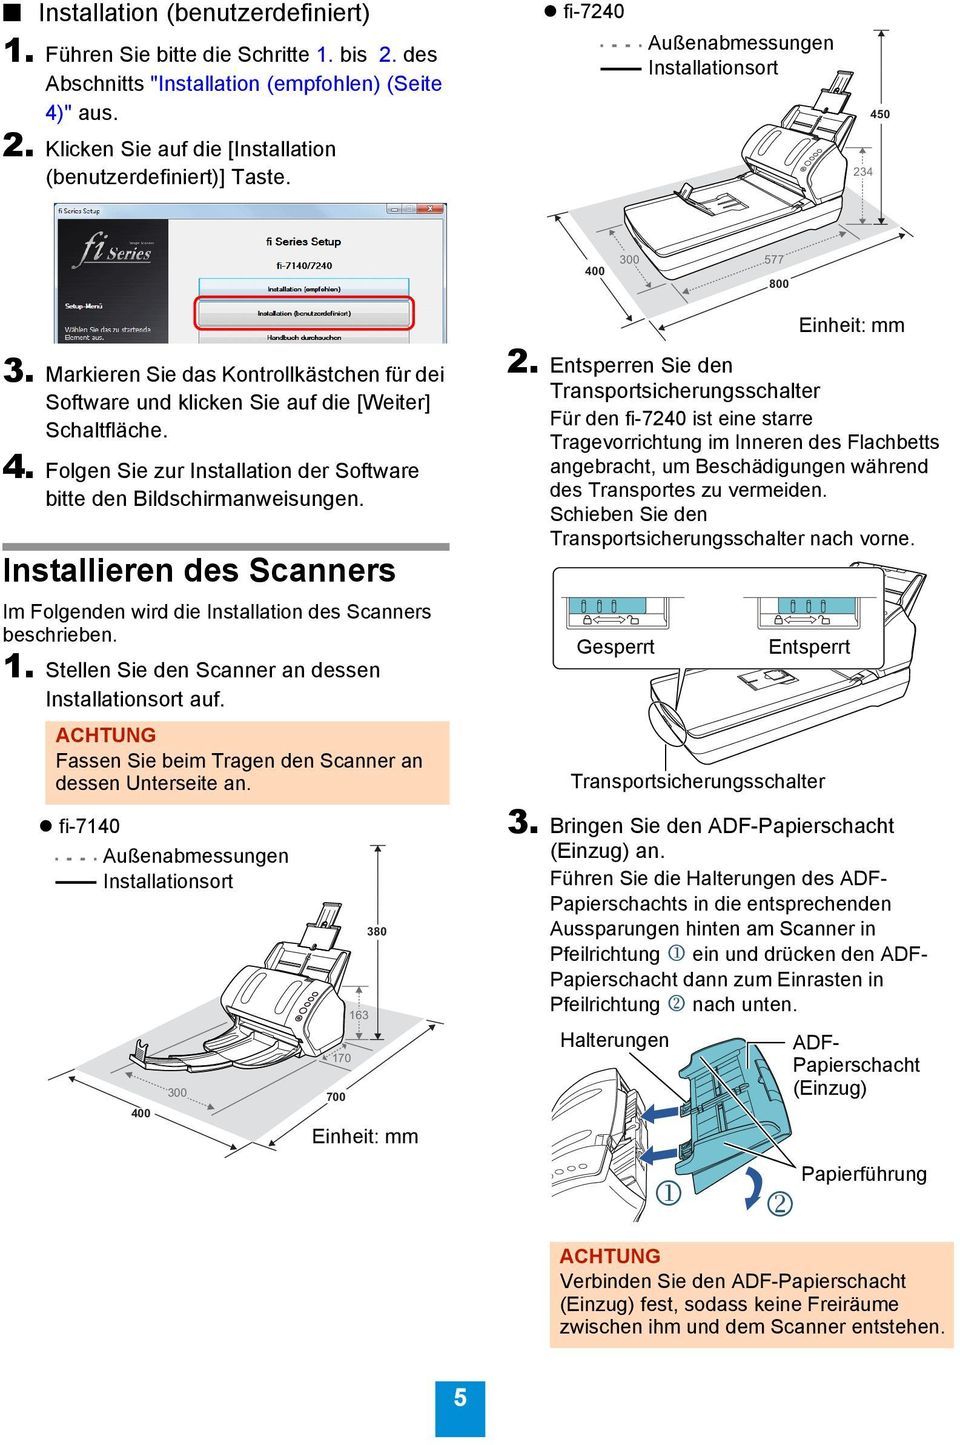 Installieren des Scanners Im Folgenden wird die Installation des Scanners beschrieben. 1. Stellen Sie den Scanner an dessen Installationsort auf.